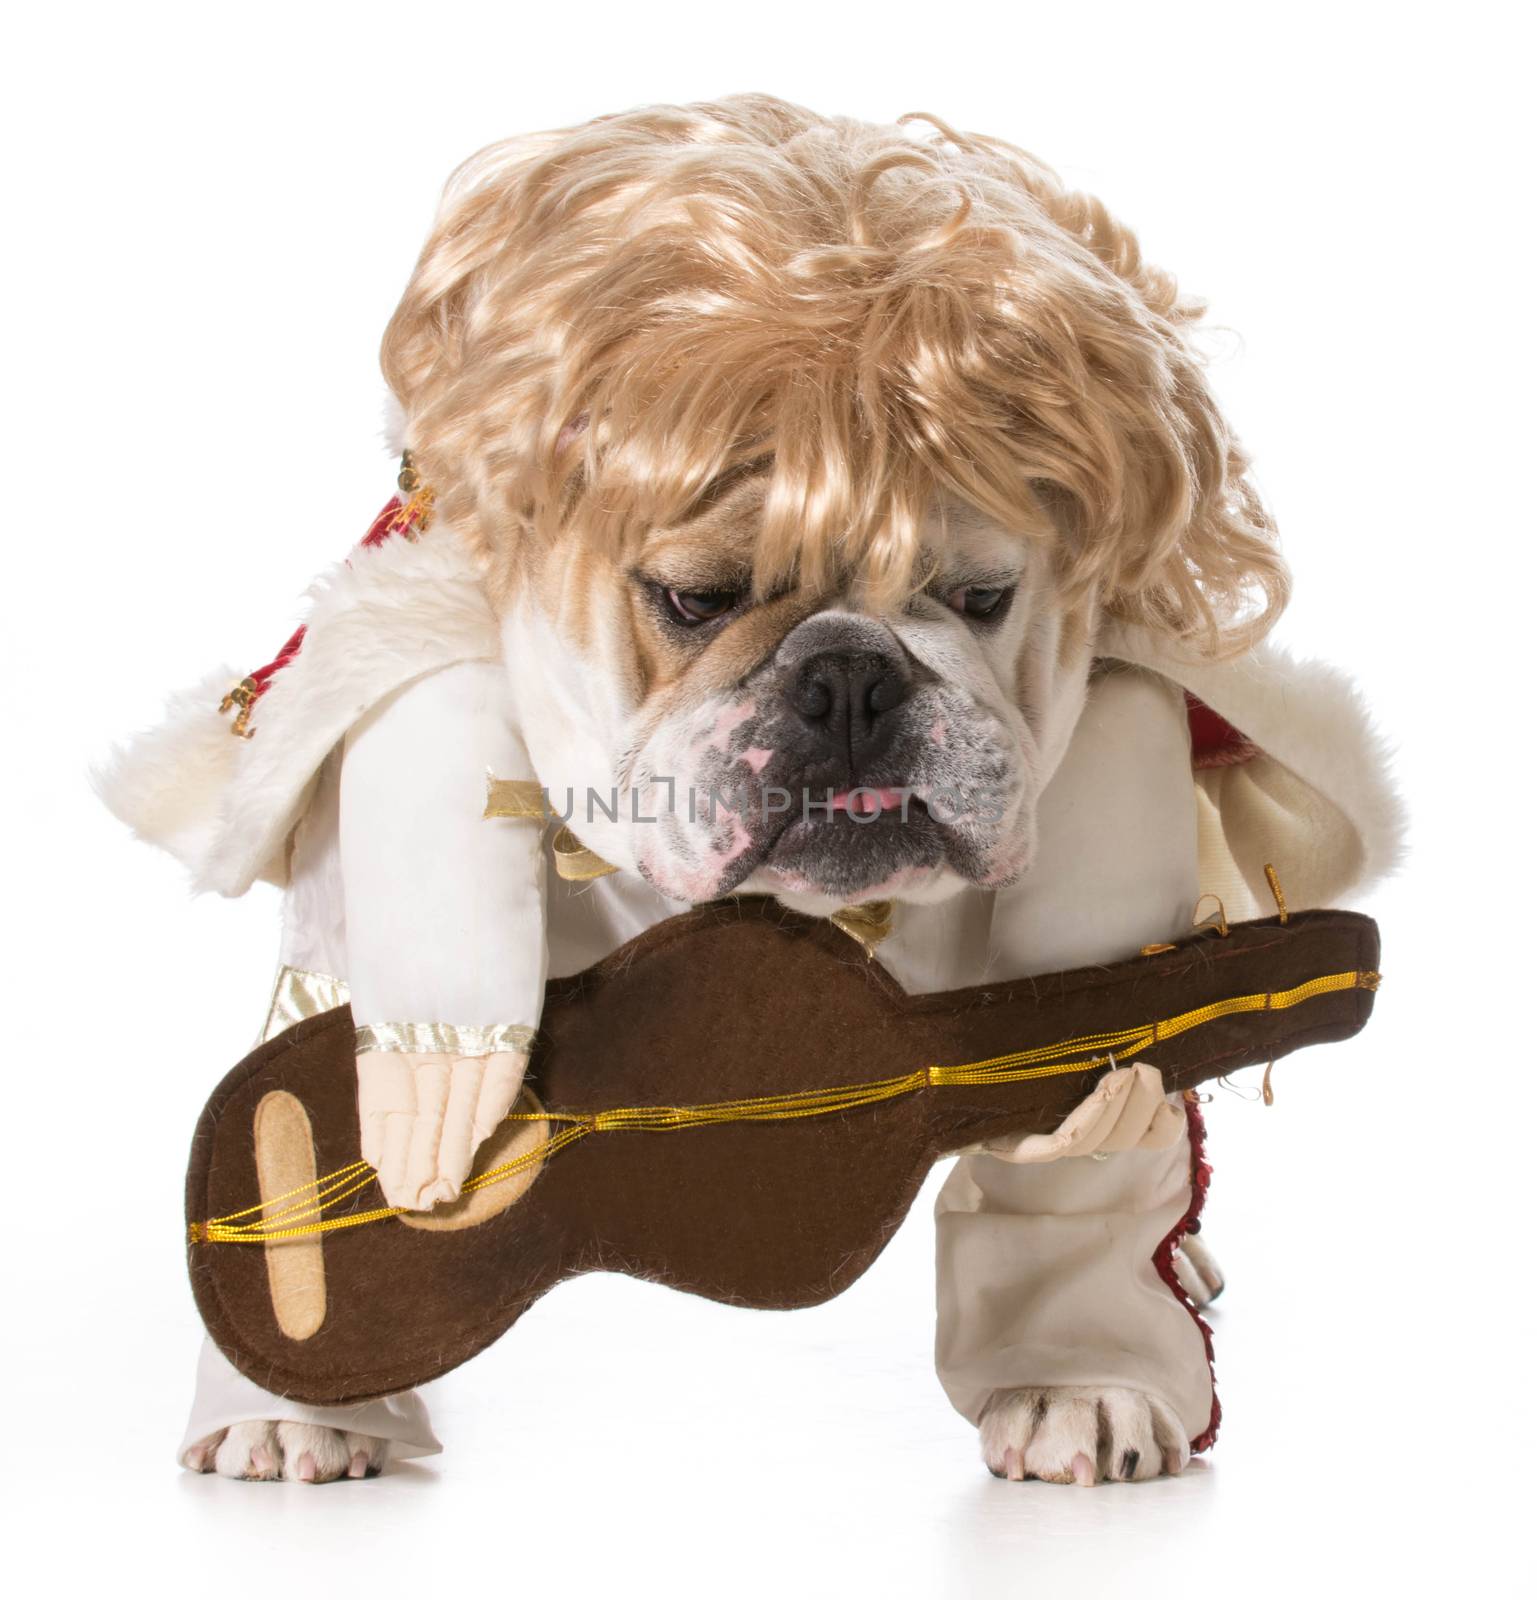 hound dog - english bulldog playing guitar isolated on white